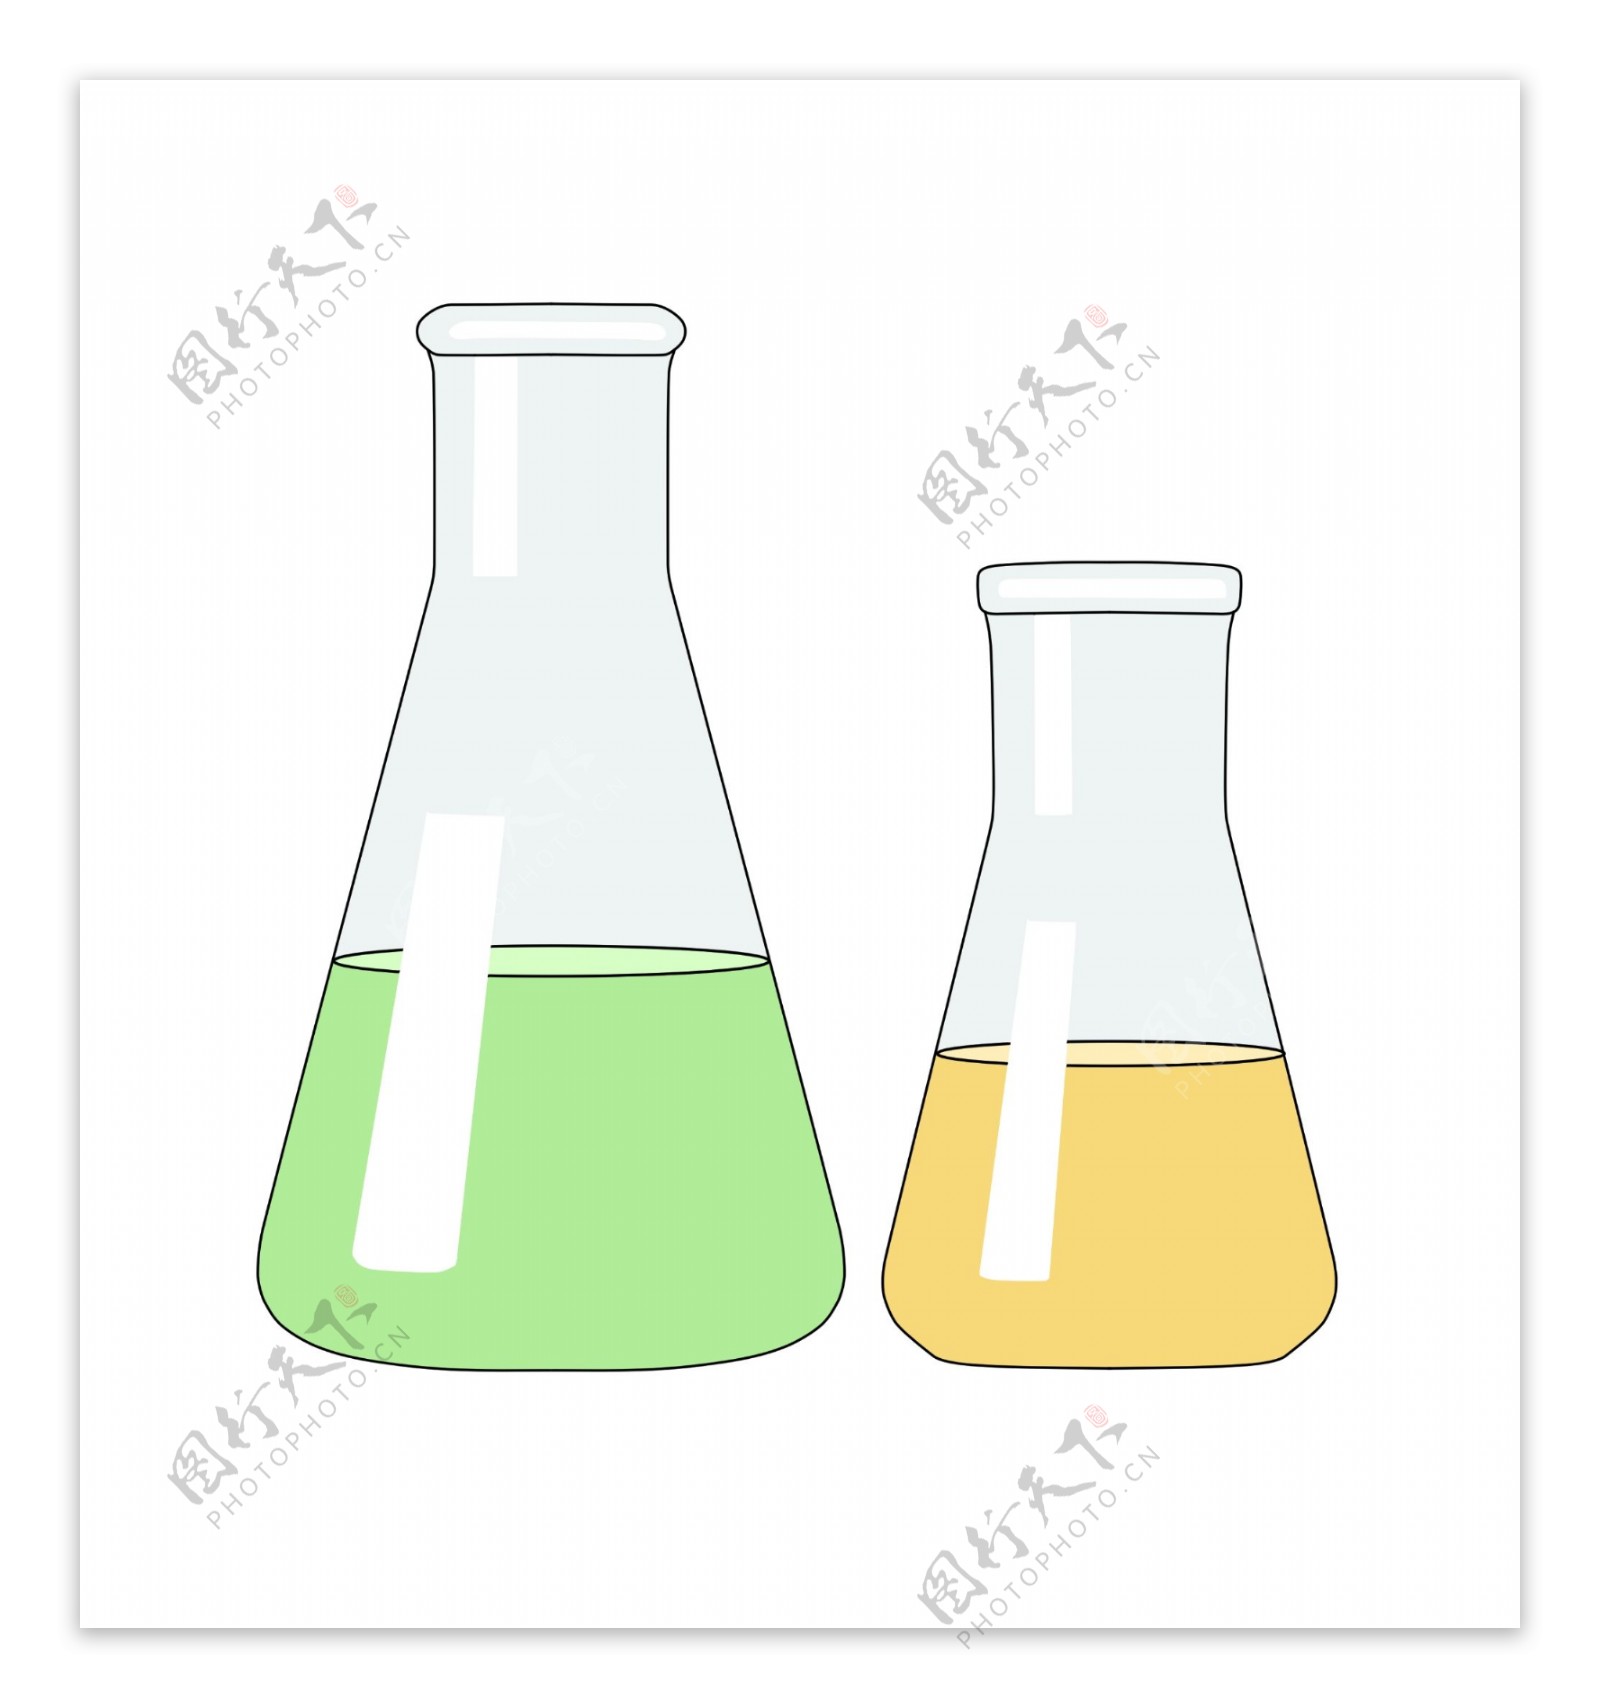 两个化学烧瓶插图